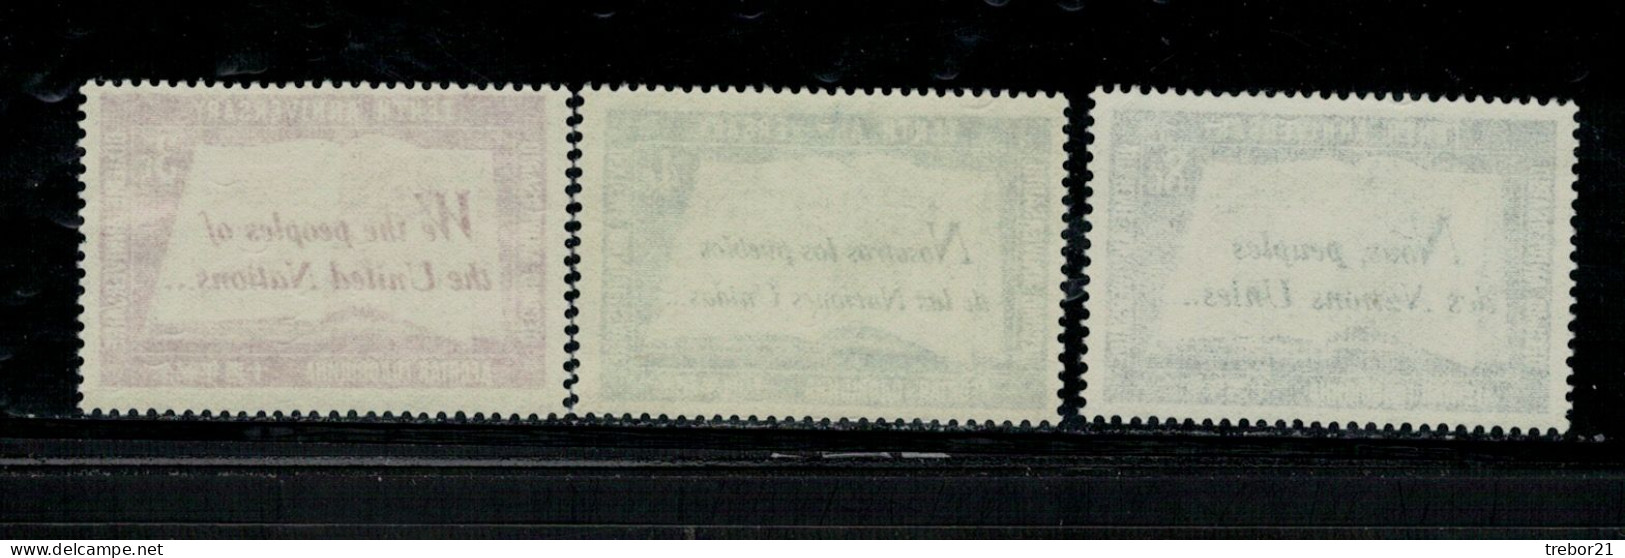 NATIONS UNIES - NEW YORK  _yvert N° 35 / 37 Anniversaire - Unused Stamps